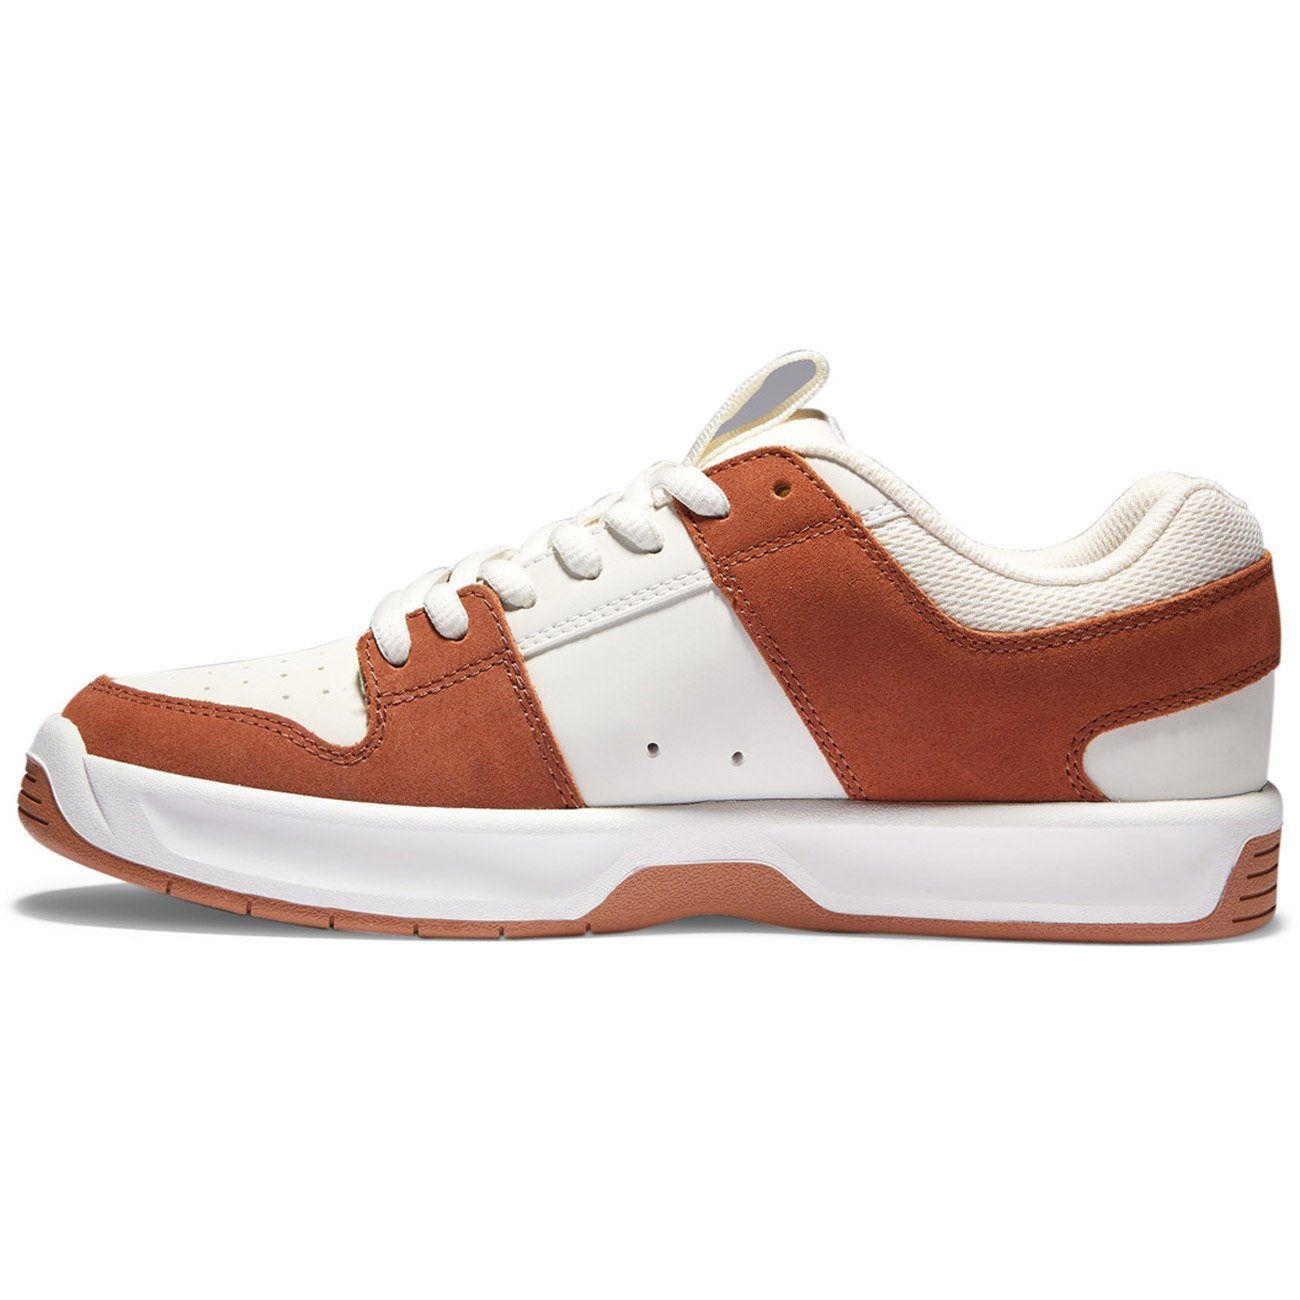 Shoes Sneaker ZERO Brown/Tan LYNX DC M